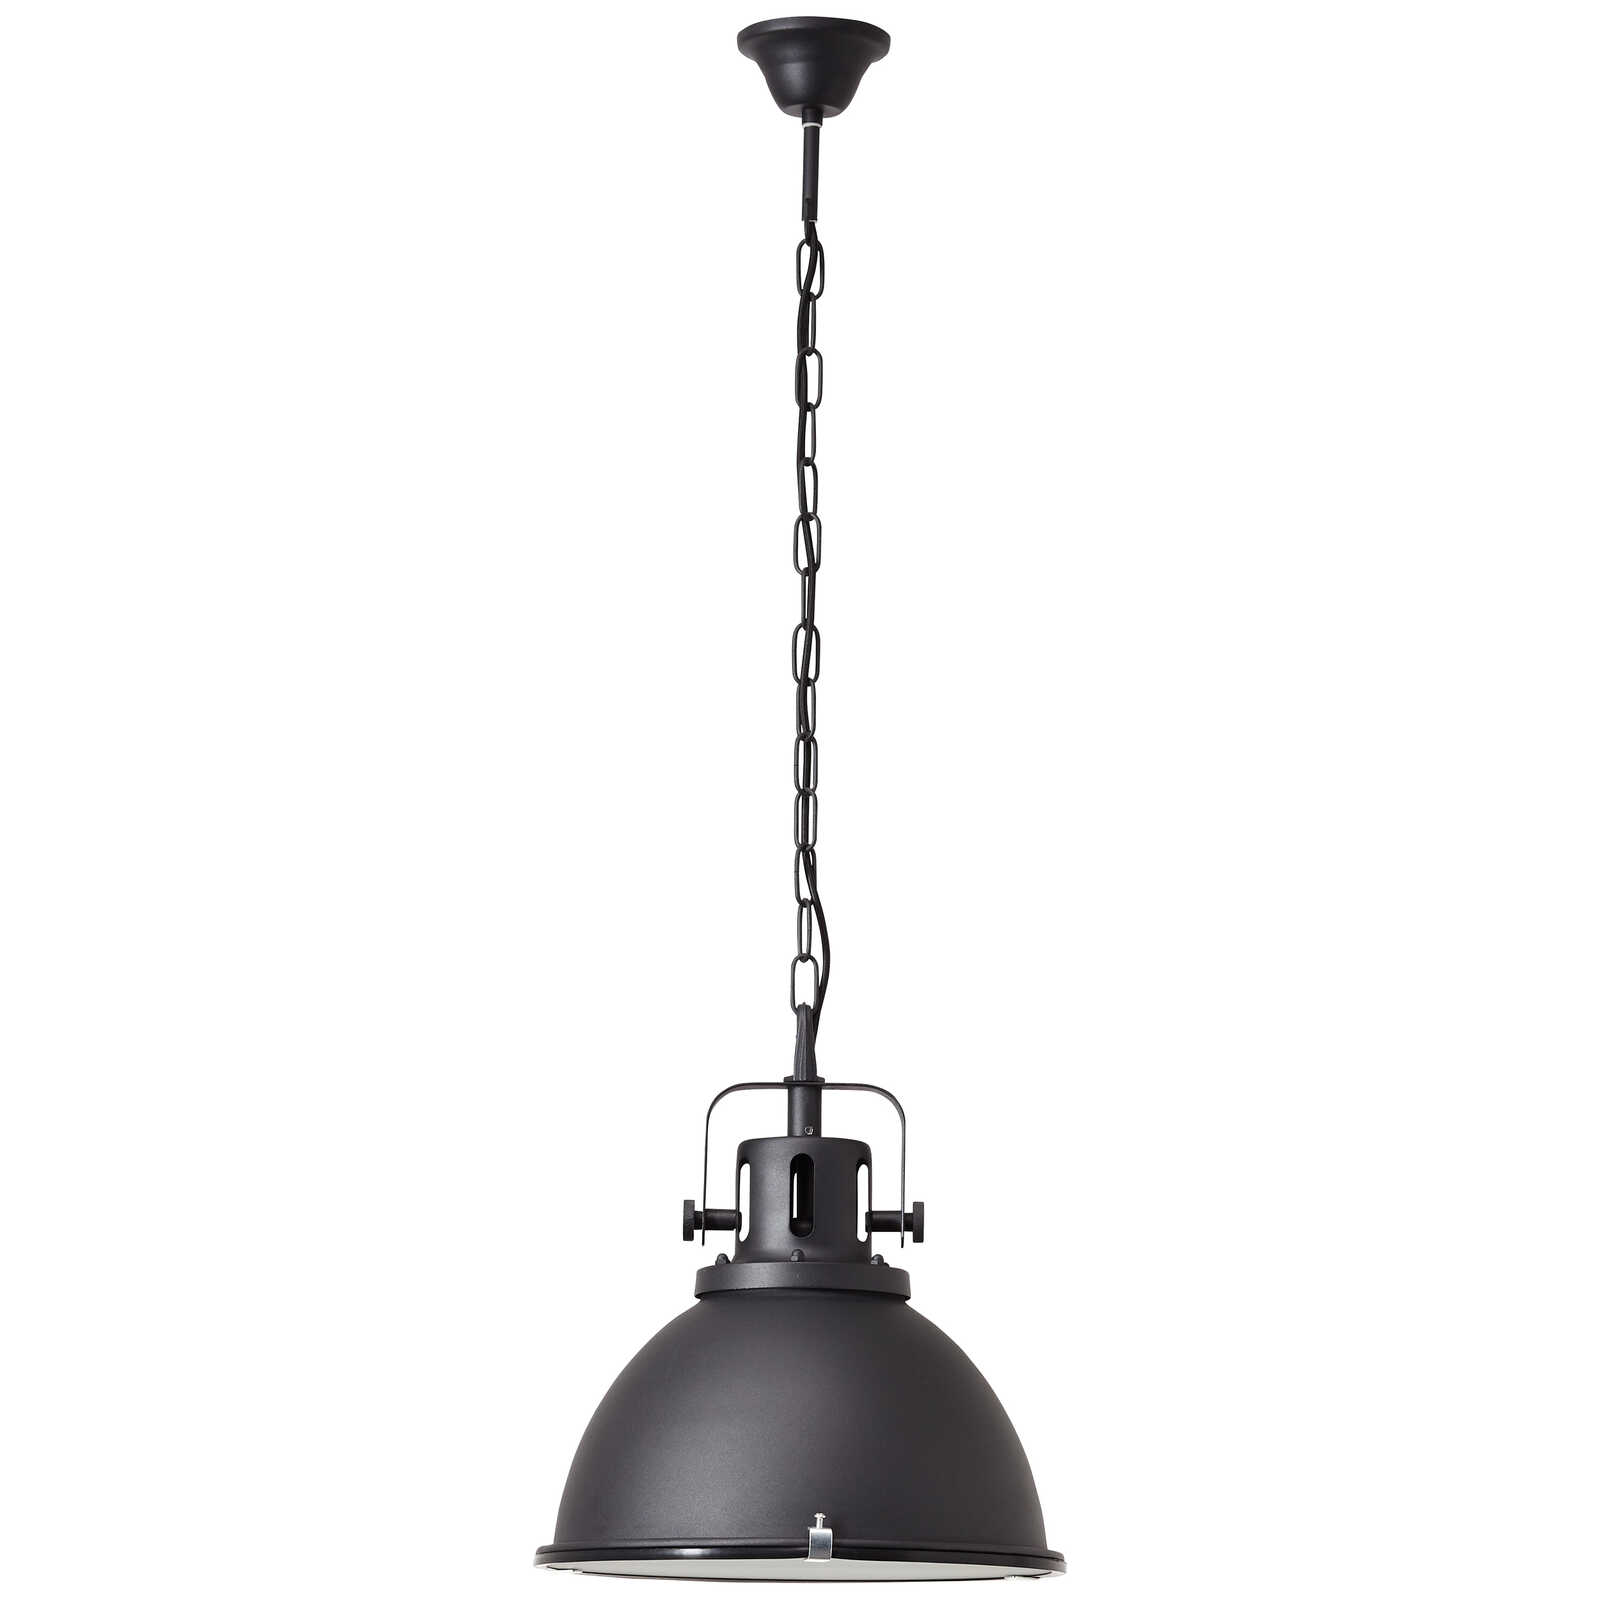             Metalen hanglamp - Josefine 4 - Zwart
        